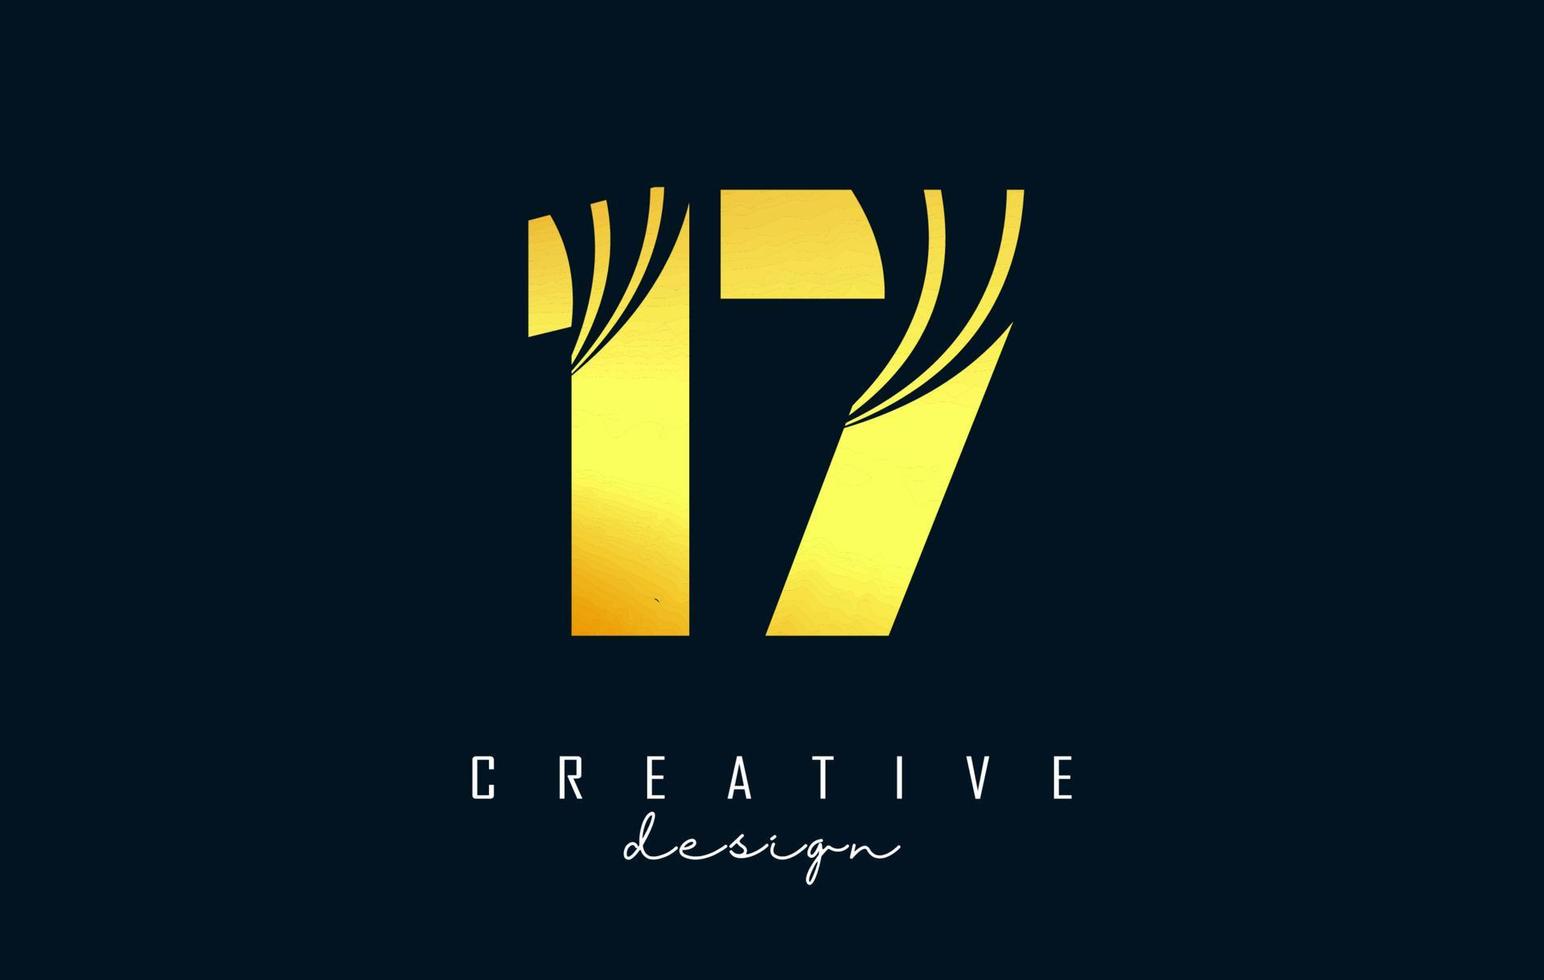 logo créatif numéro 17 1 7 doré avec lignes directrices et conception de concept de route. nombre avec un dessin géométrique. vecteur